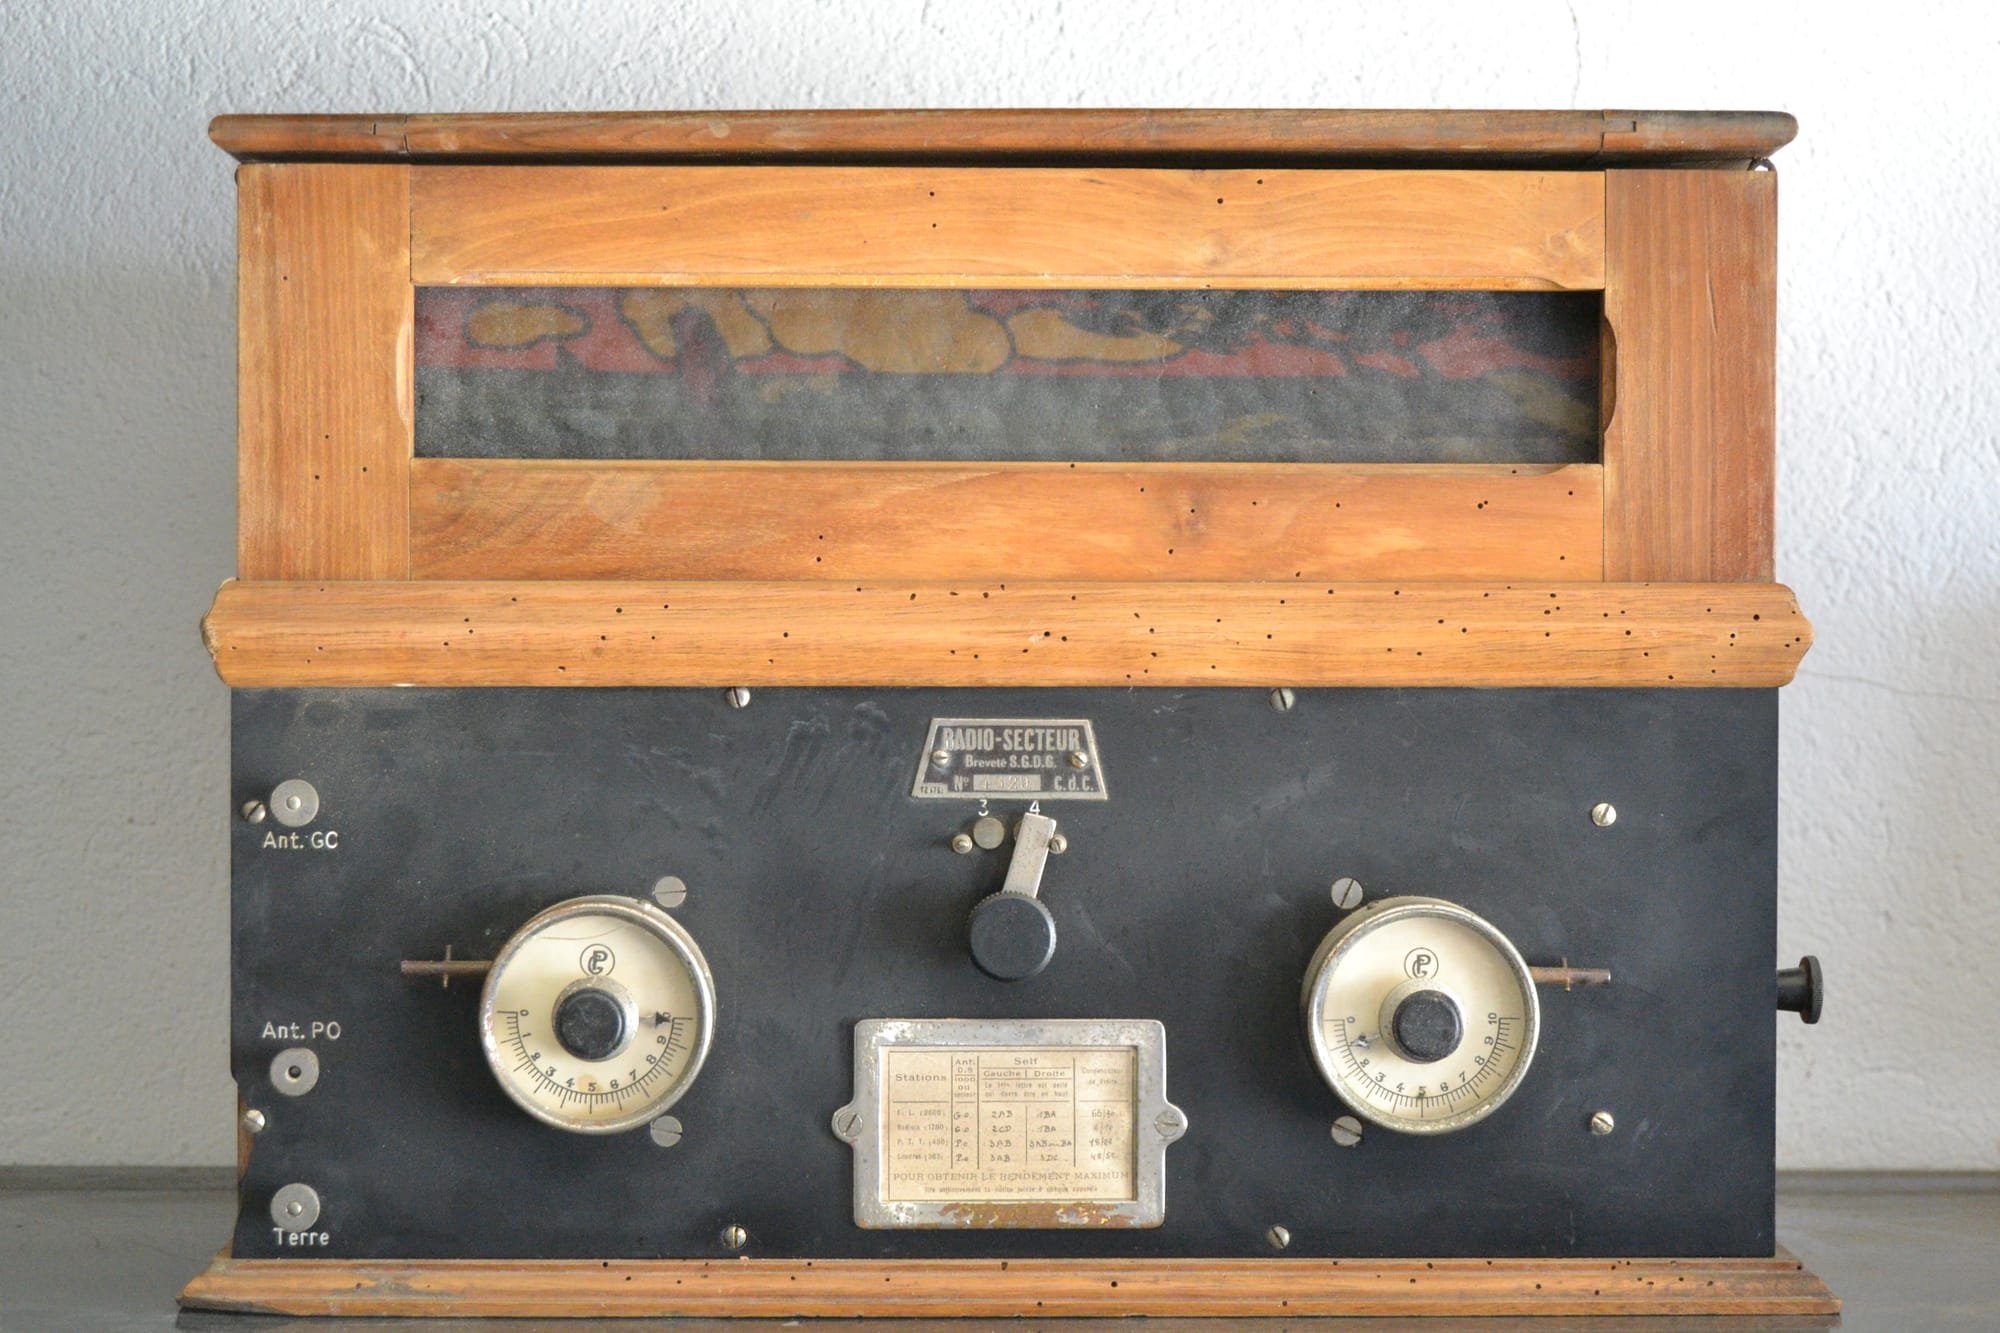 Péricaud, G. et A. P: Radio-Secteur